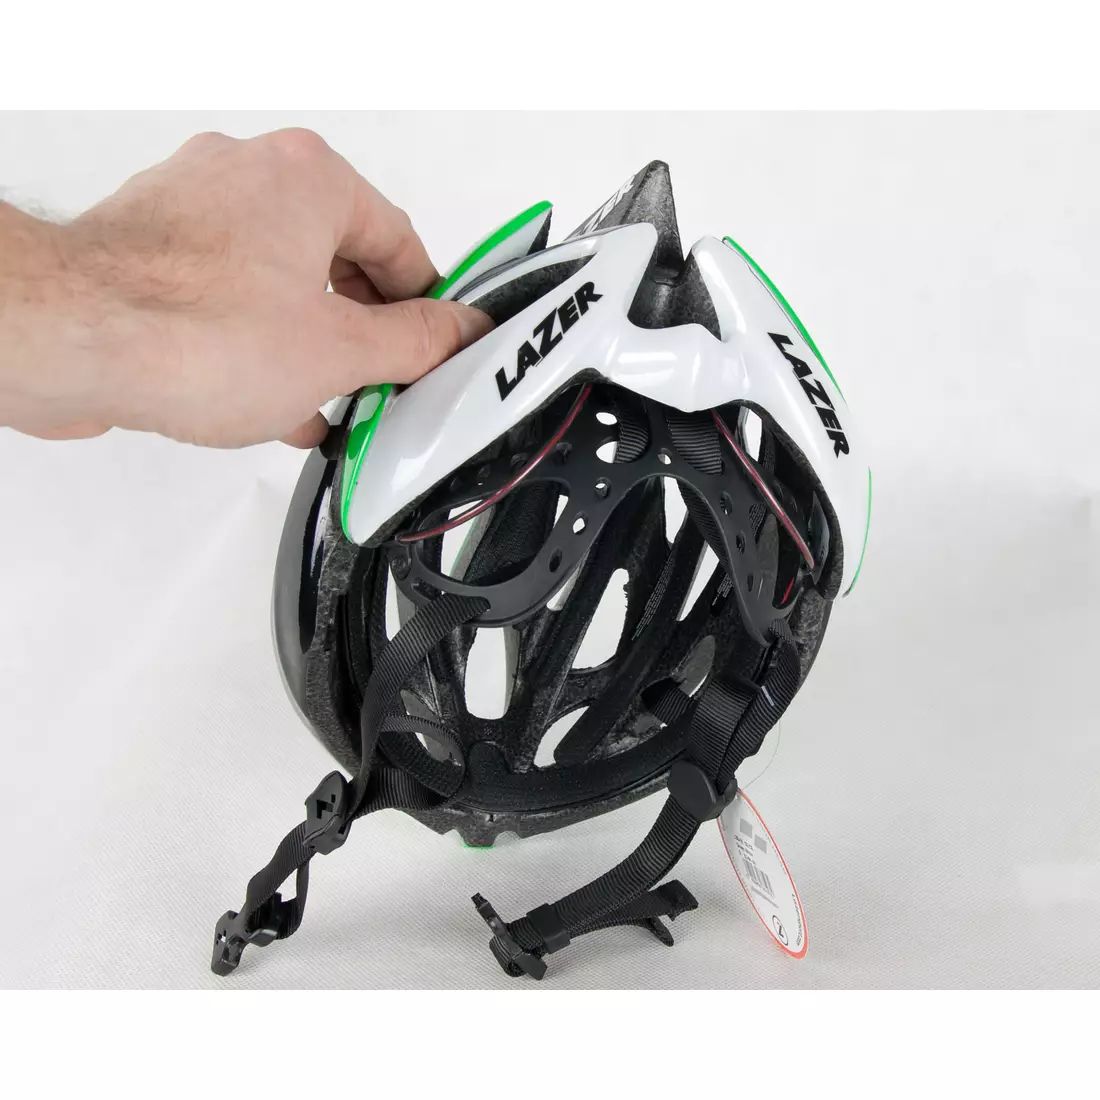 Silniční cyklistická helma LAZER O2 zelená a bílá